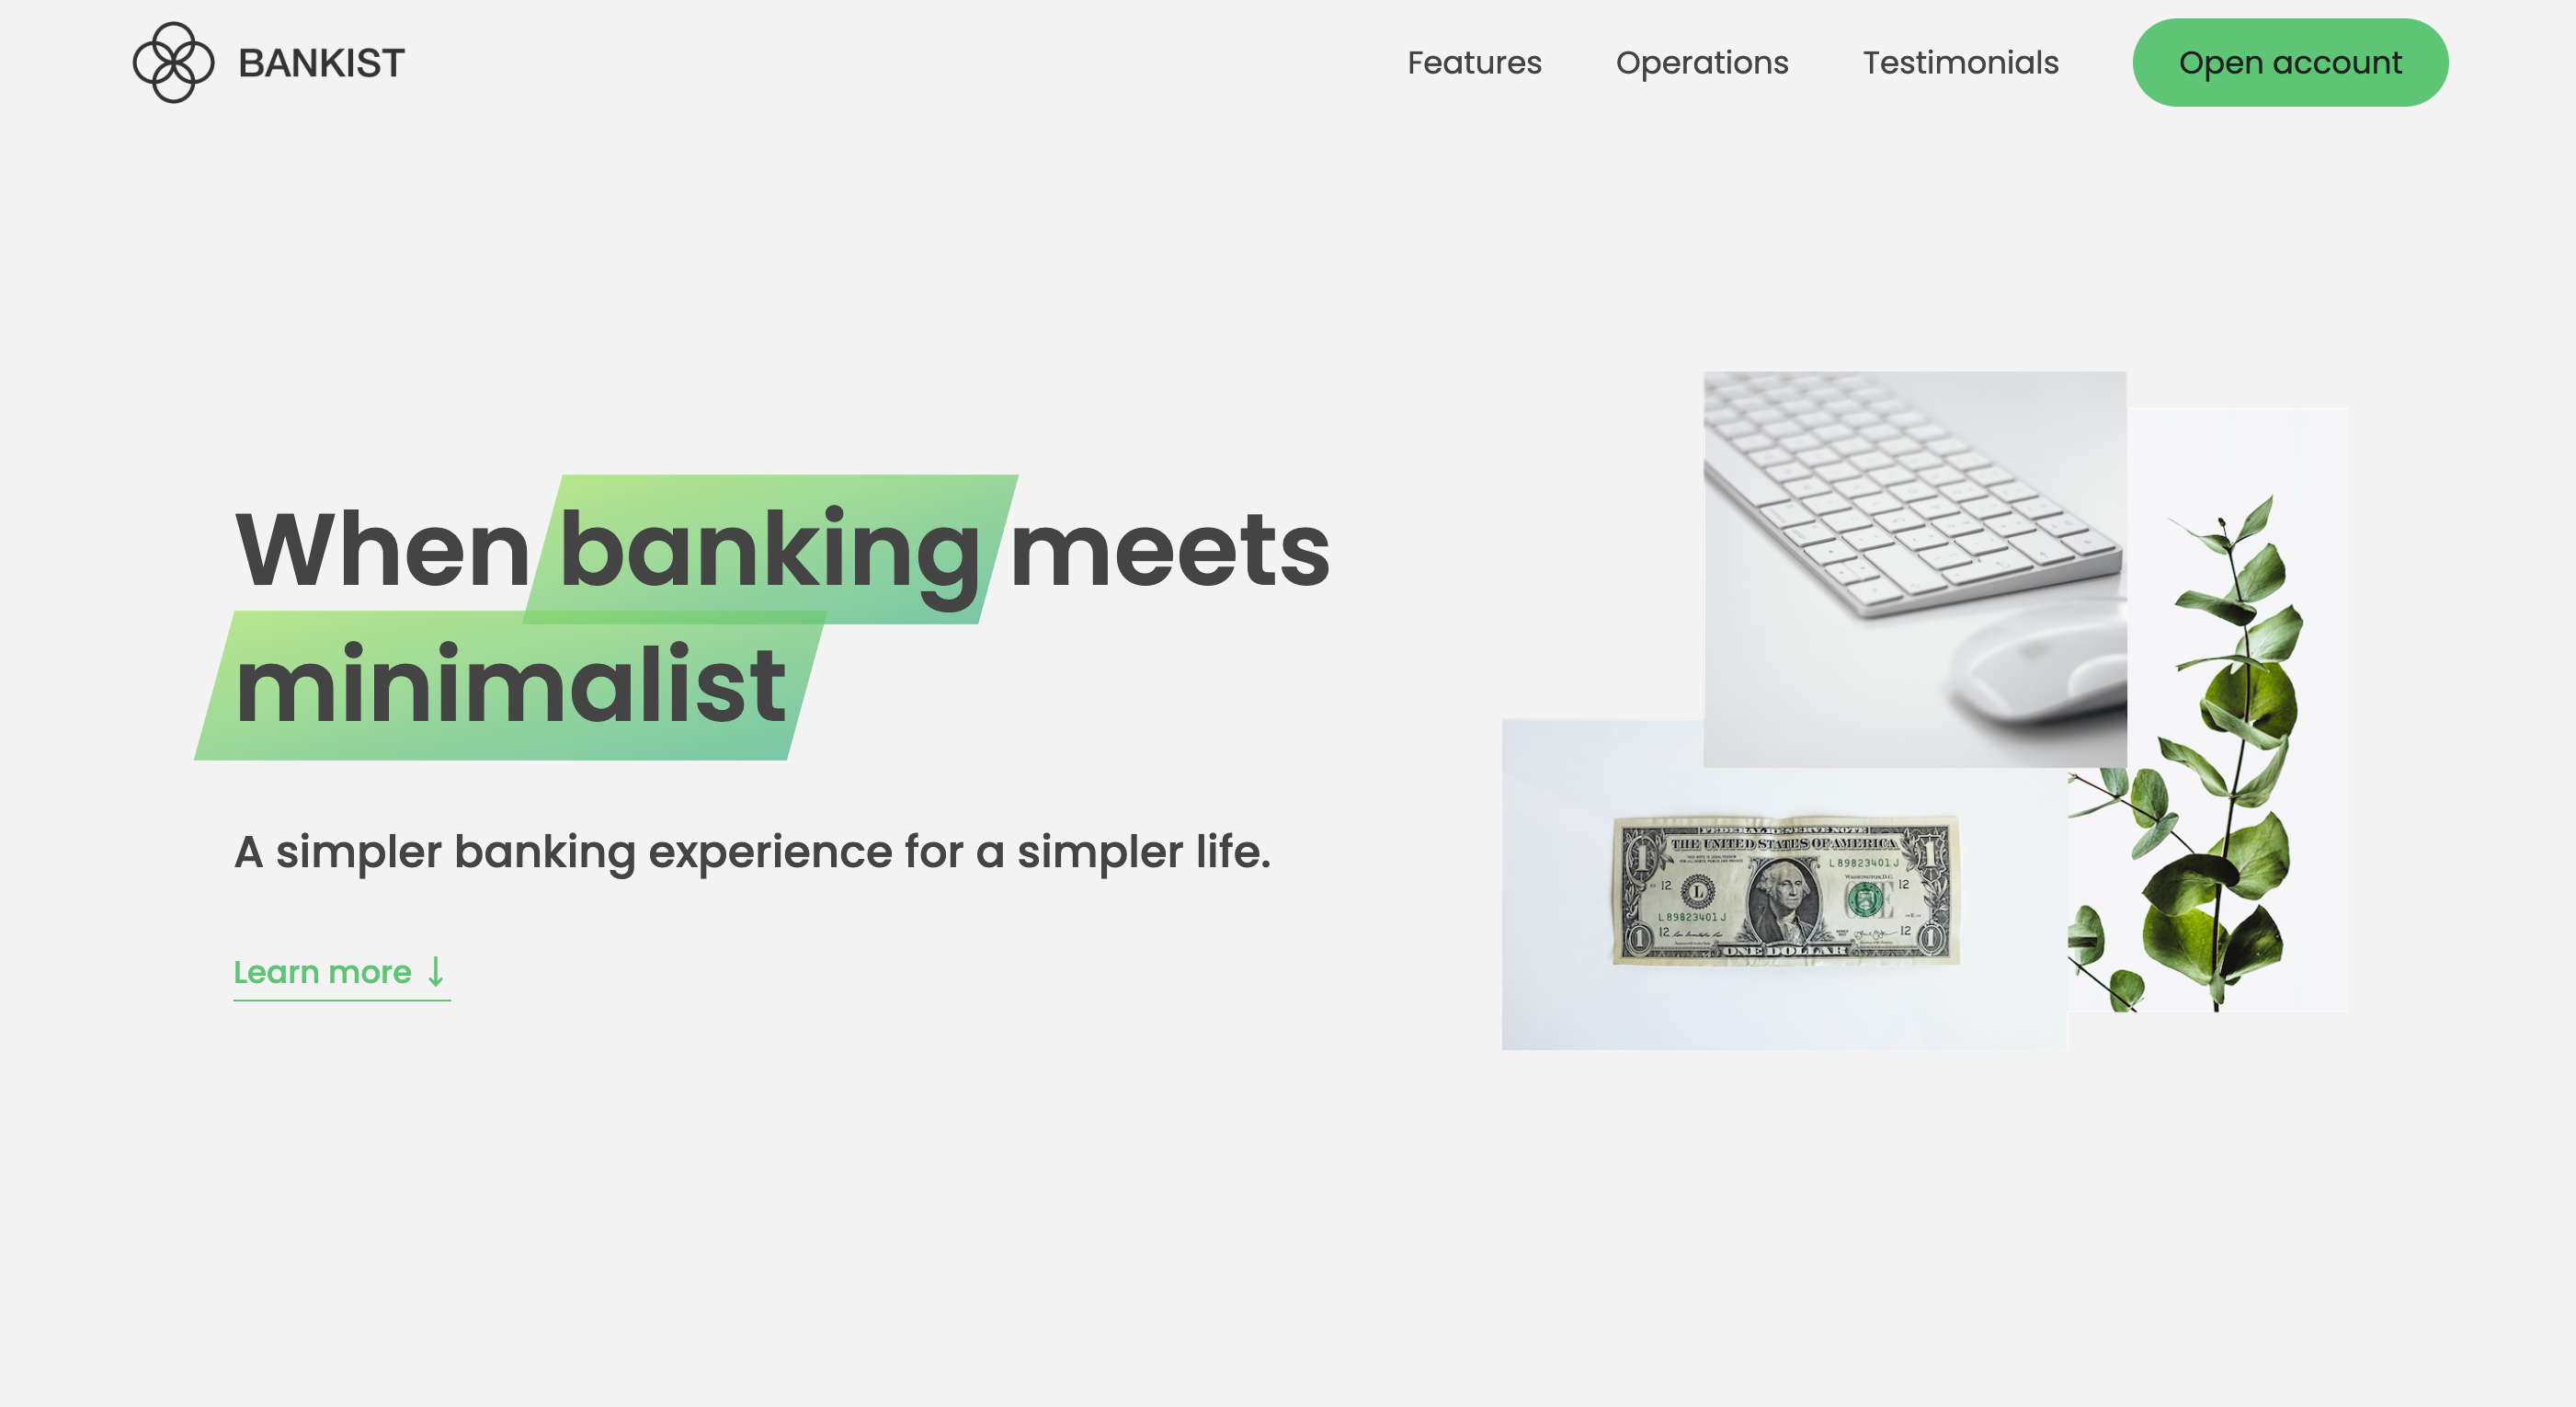 一个模拟的银行官网页面，用原生JS实现了懒加载、平滑滚动，以及幻灯片等组件